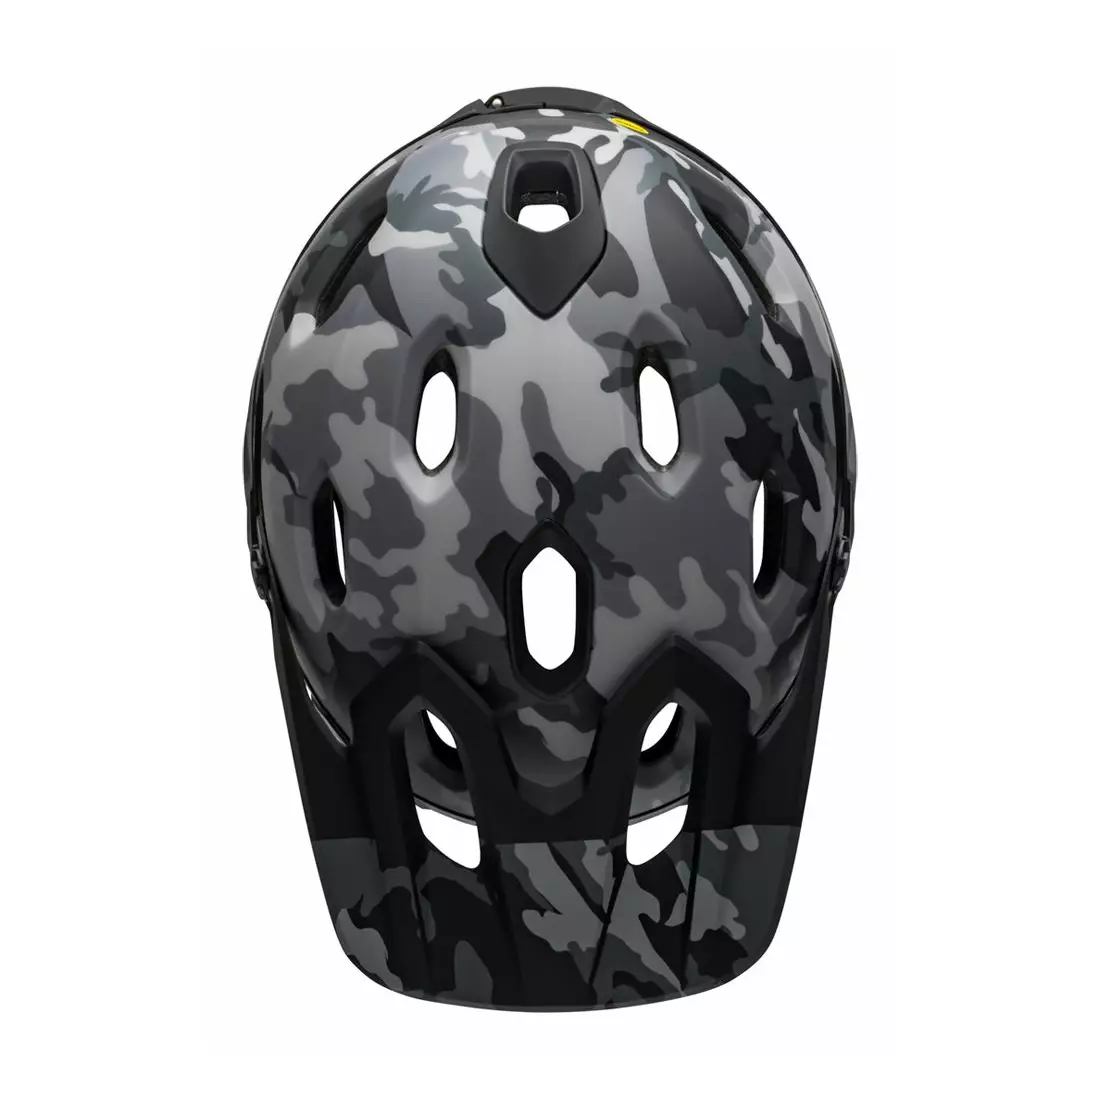 BELL SUPER DH MIPS SPHERICAL cască integrală pentru bicicletă, matte gloss black camo